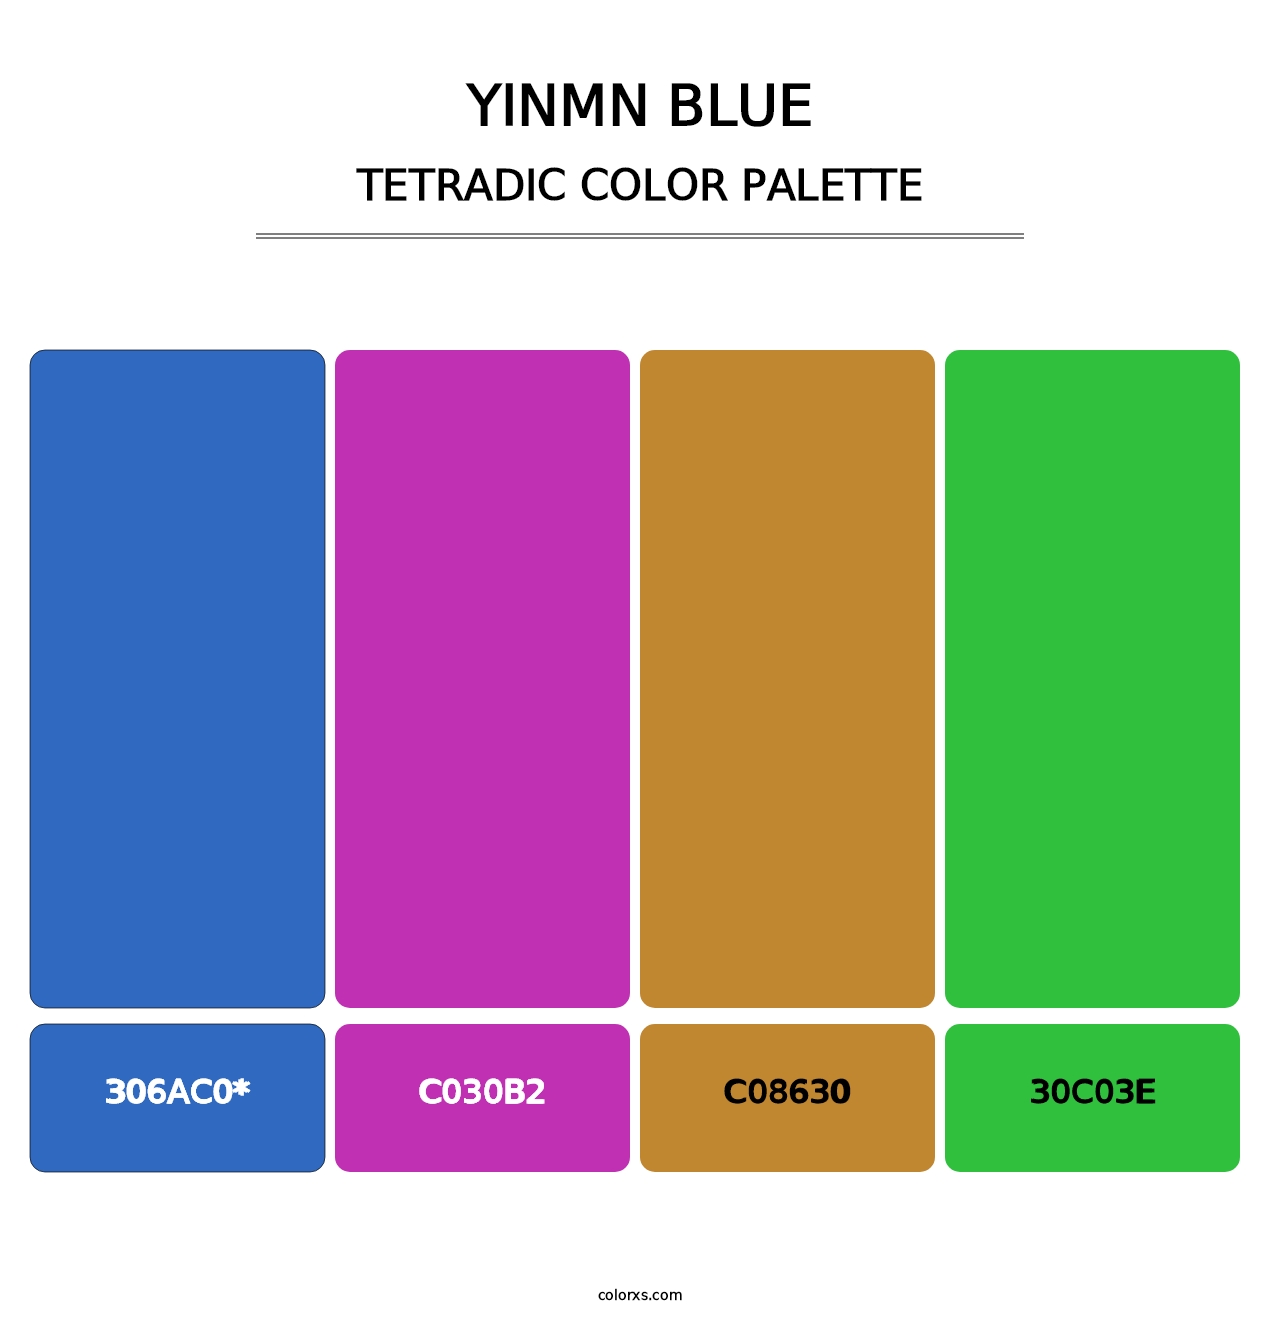 YInMn Blue - Tetradic Color Palette